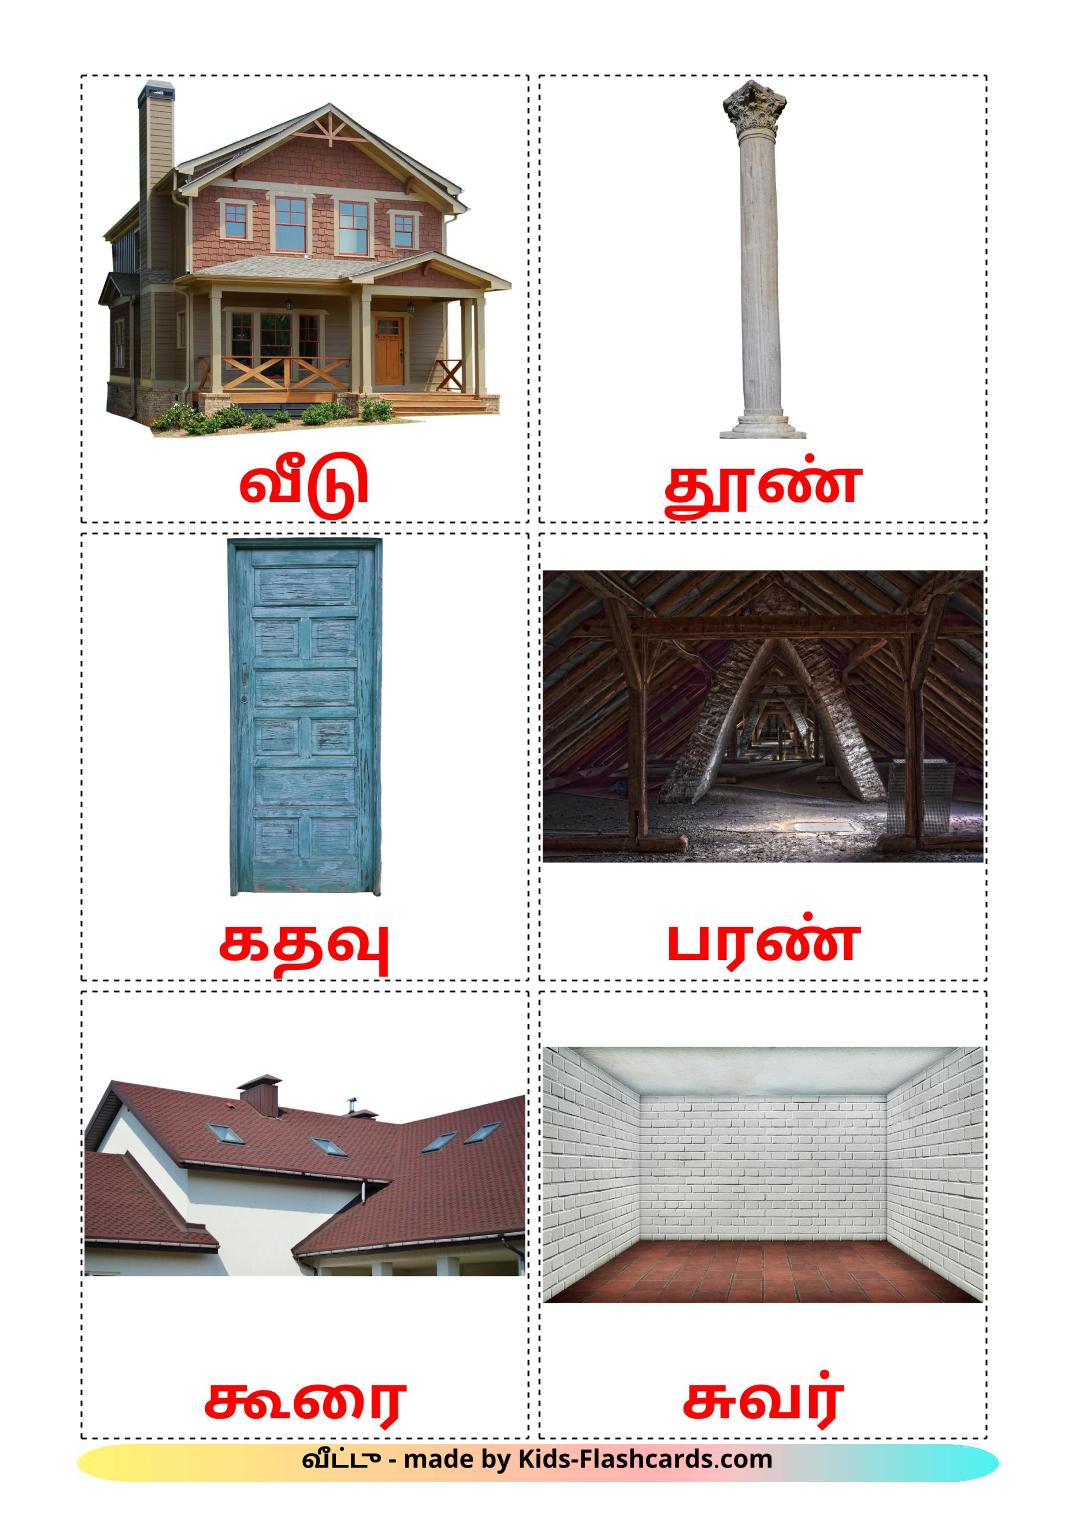 La casa - 25 fichas de tamil para imprimir gratis 